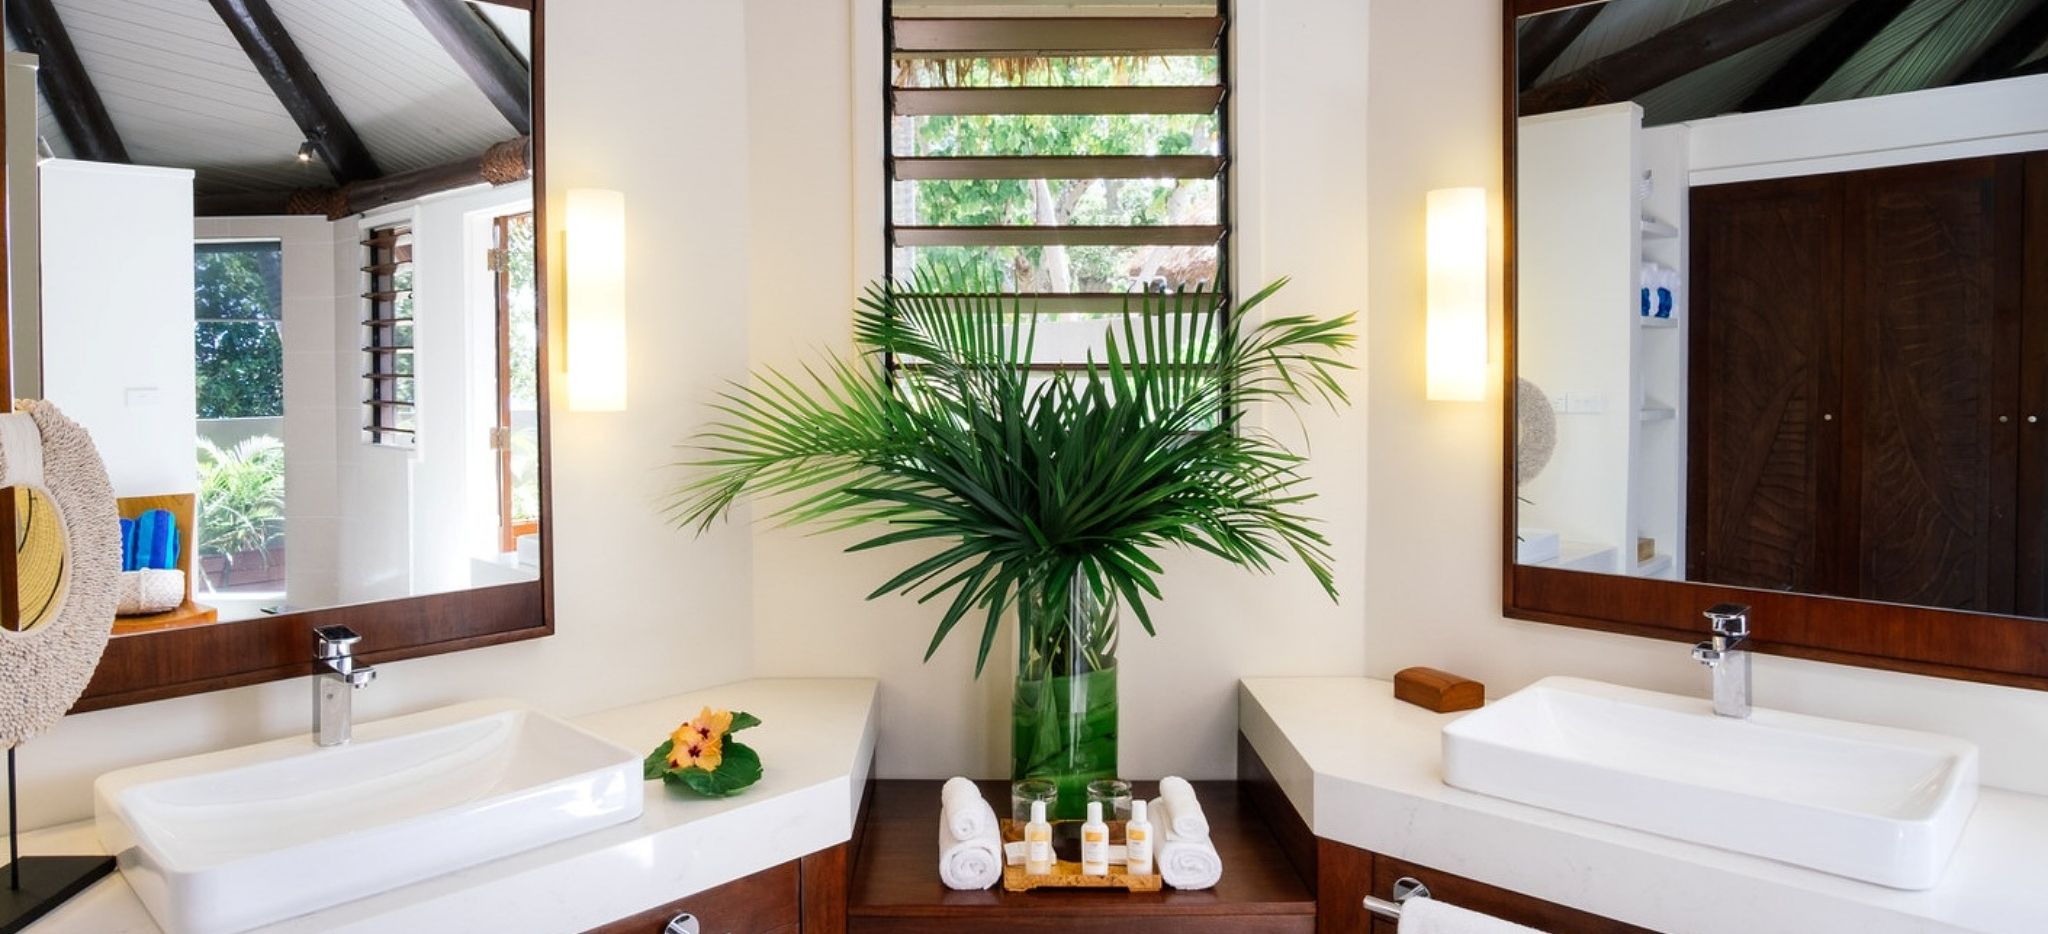 Badezimmer mit Pflanze und zwei Waschbecken im Yasawa, Fiji